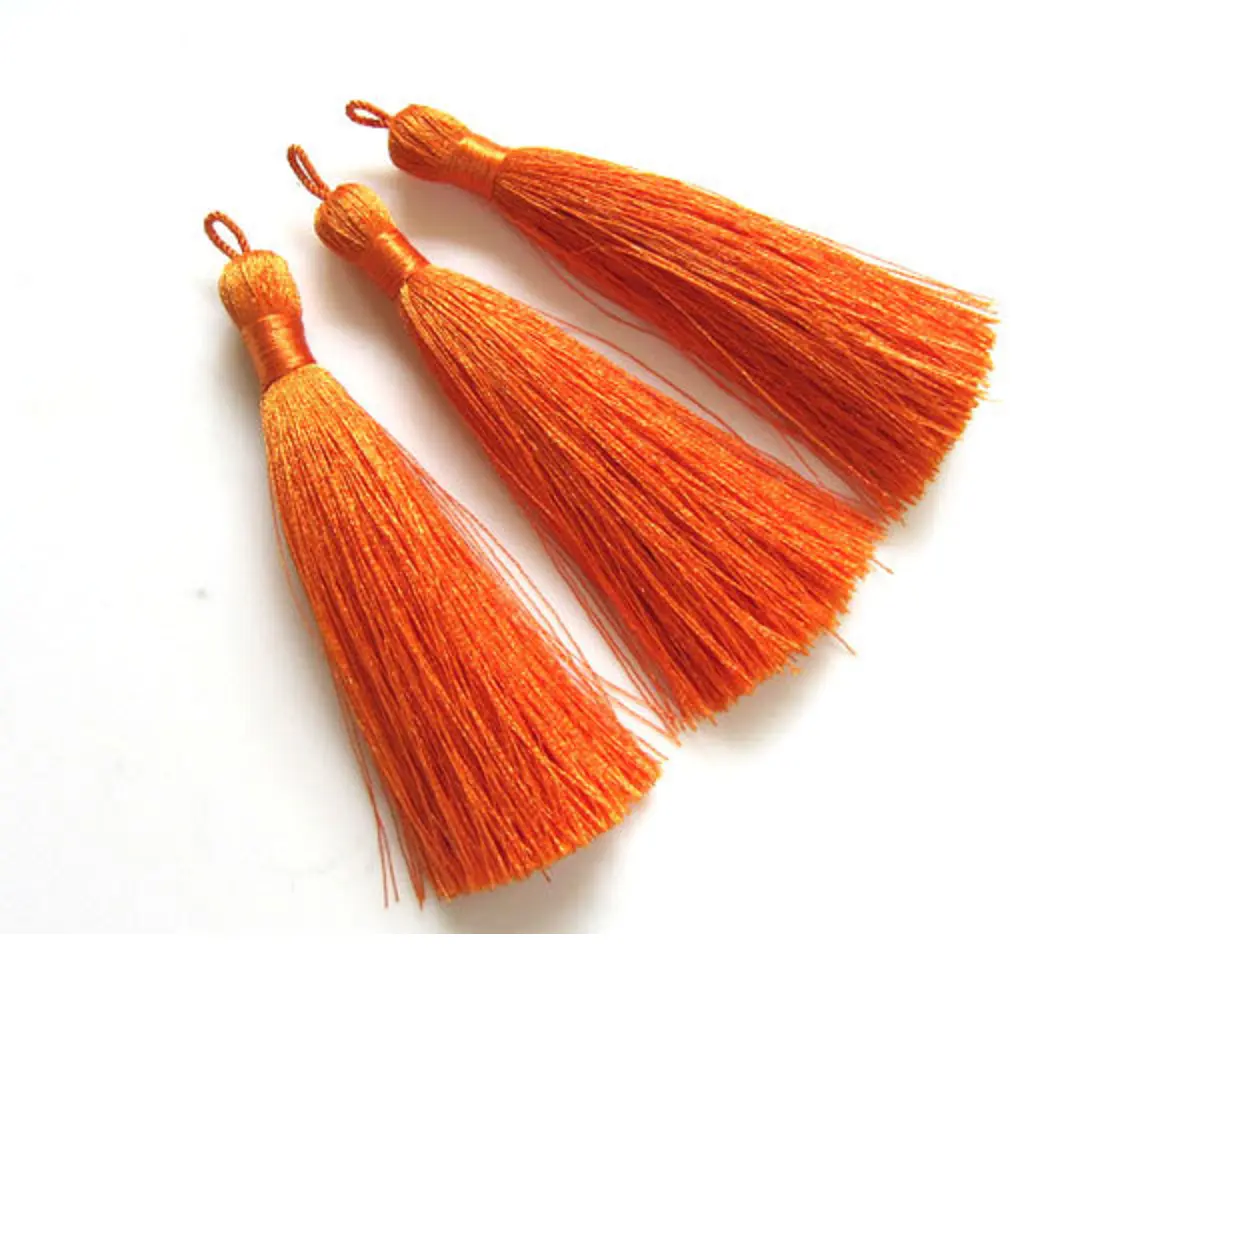 Maßge schneiderte orange farbene Quasten in Baumwolle und Rayon in Sonder größen erhältlich